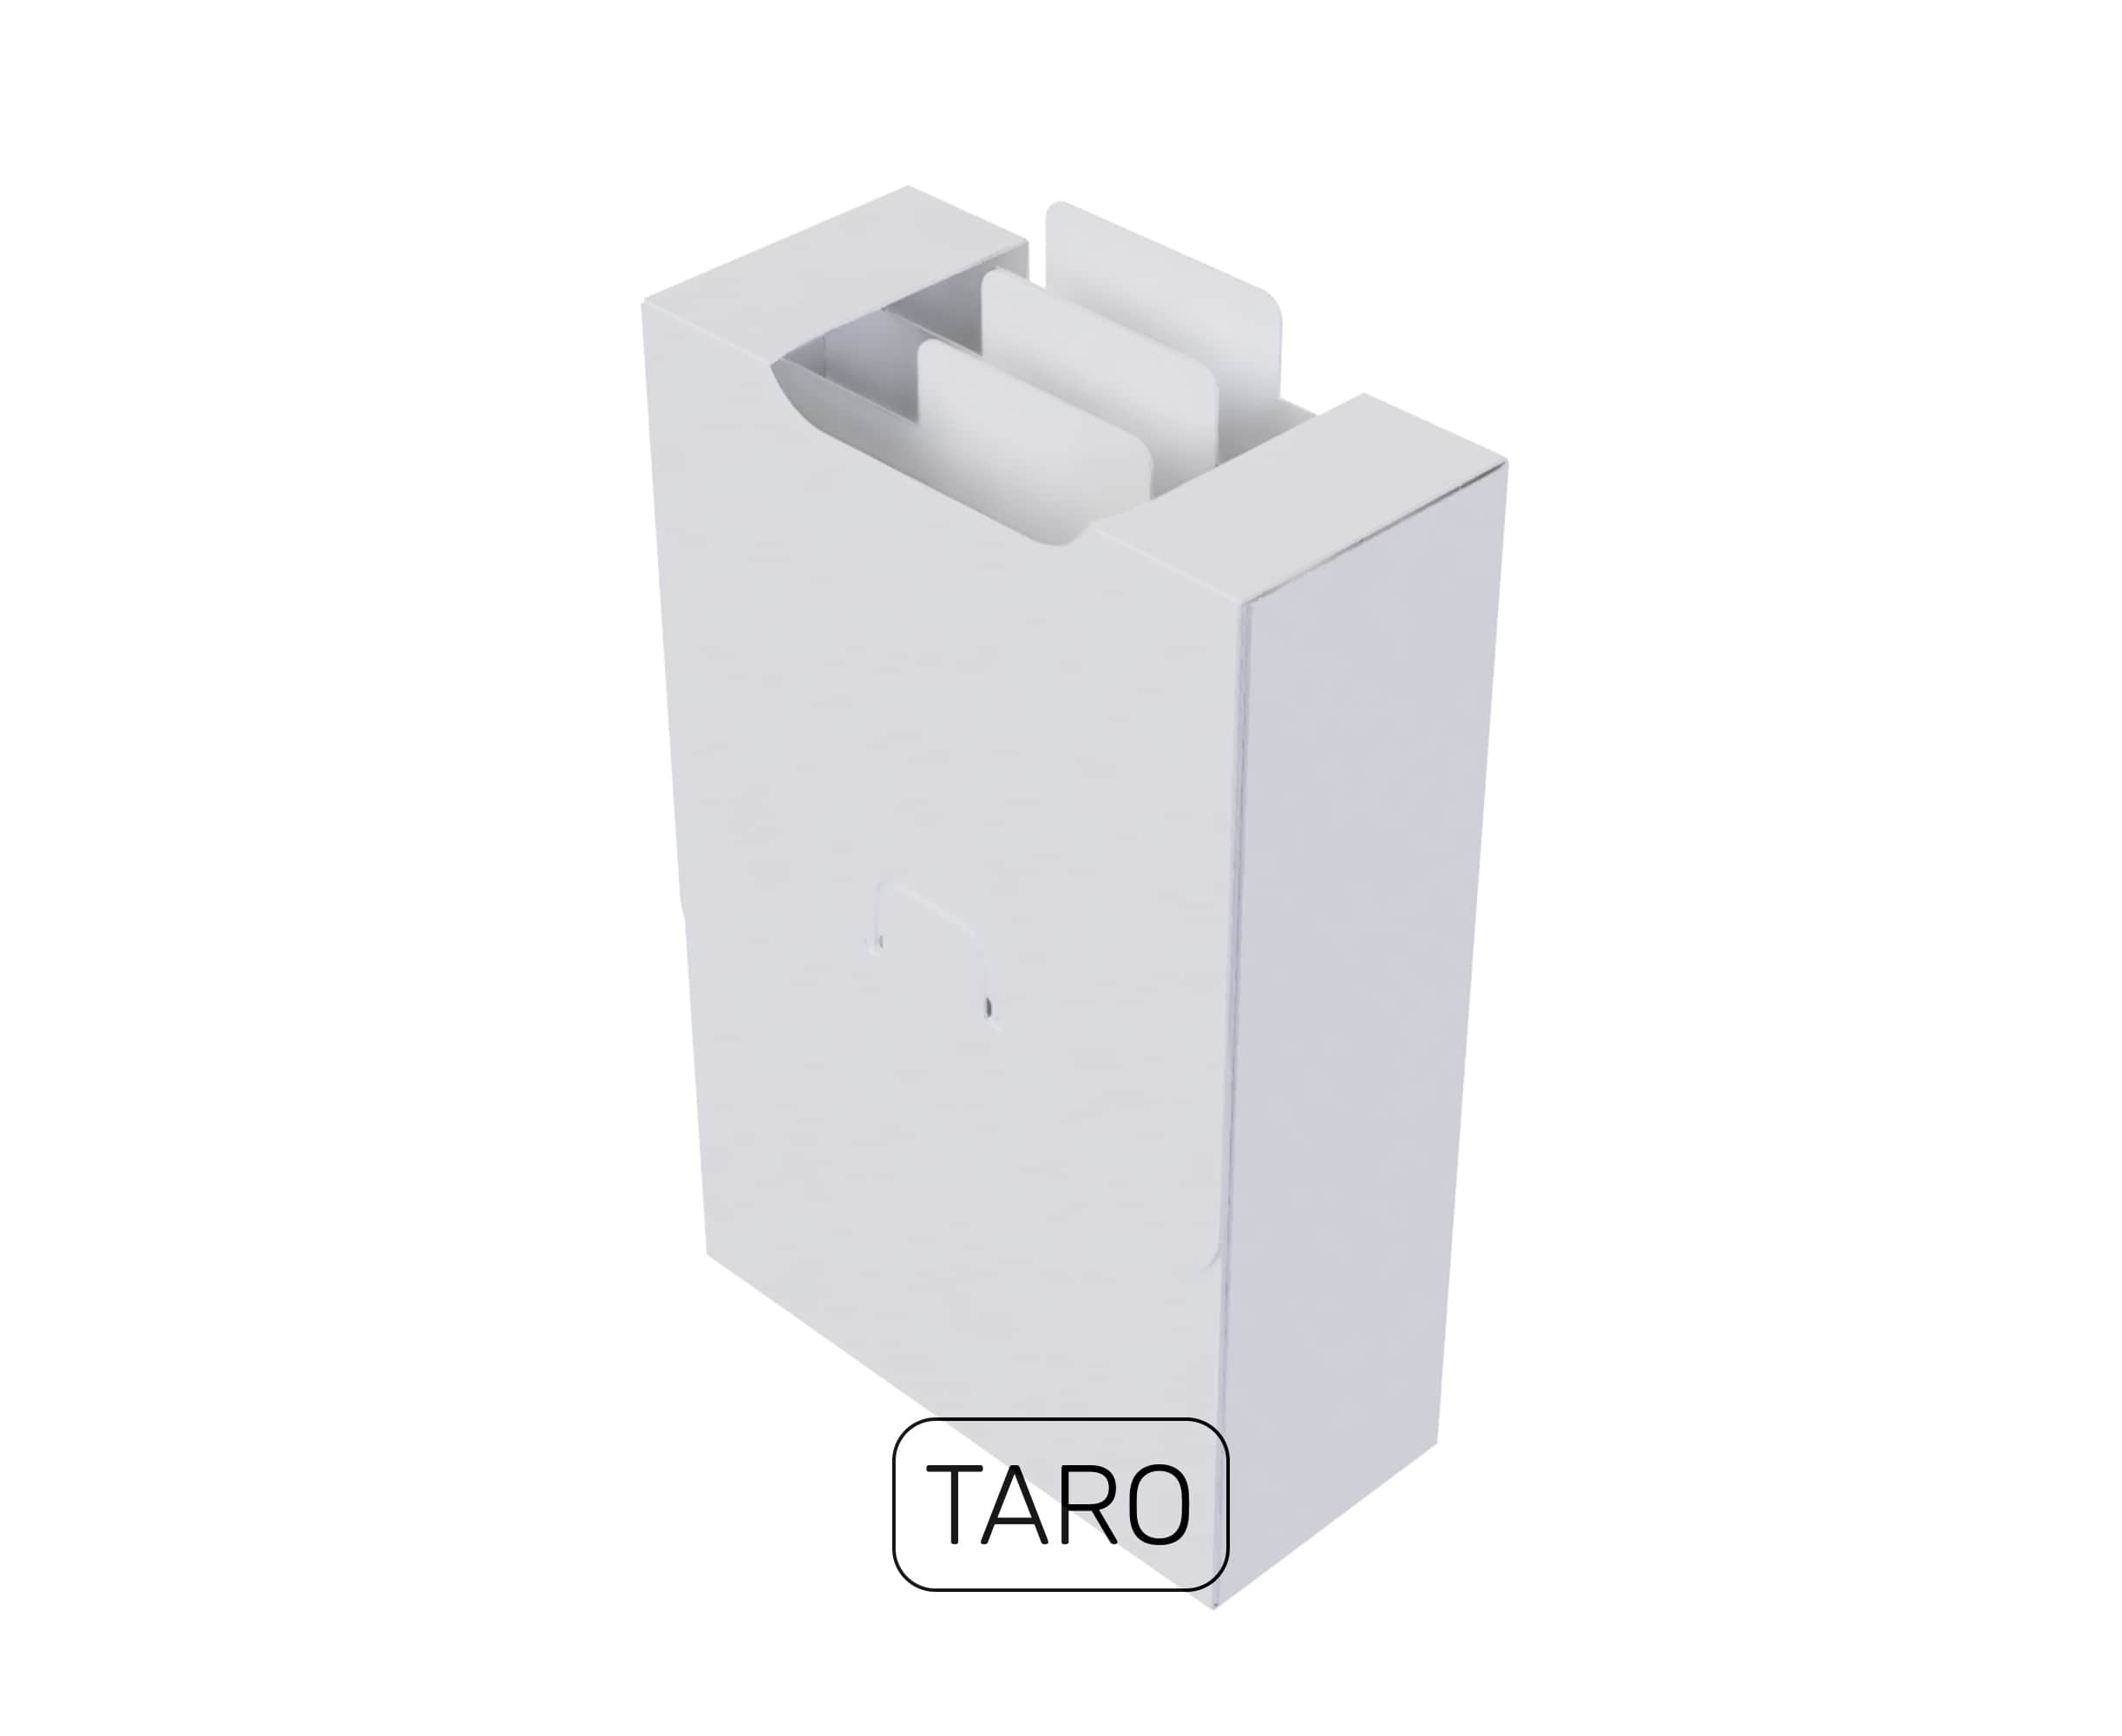  UniqCardFile Taro 40mm ()